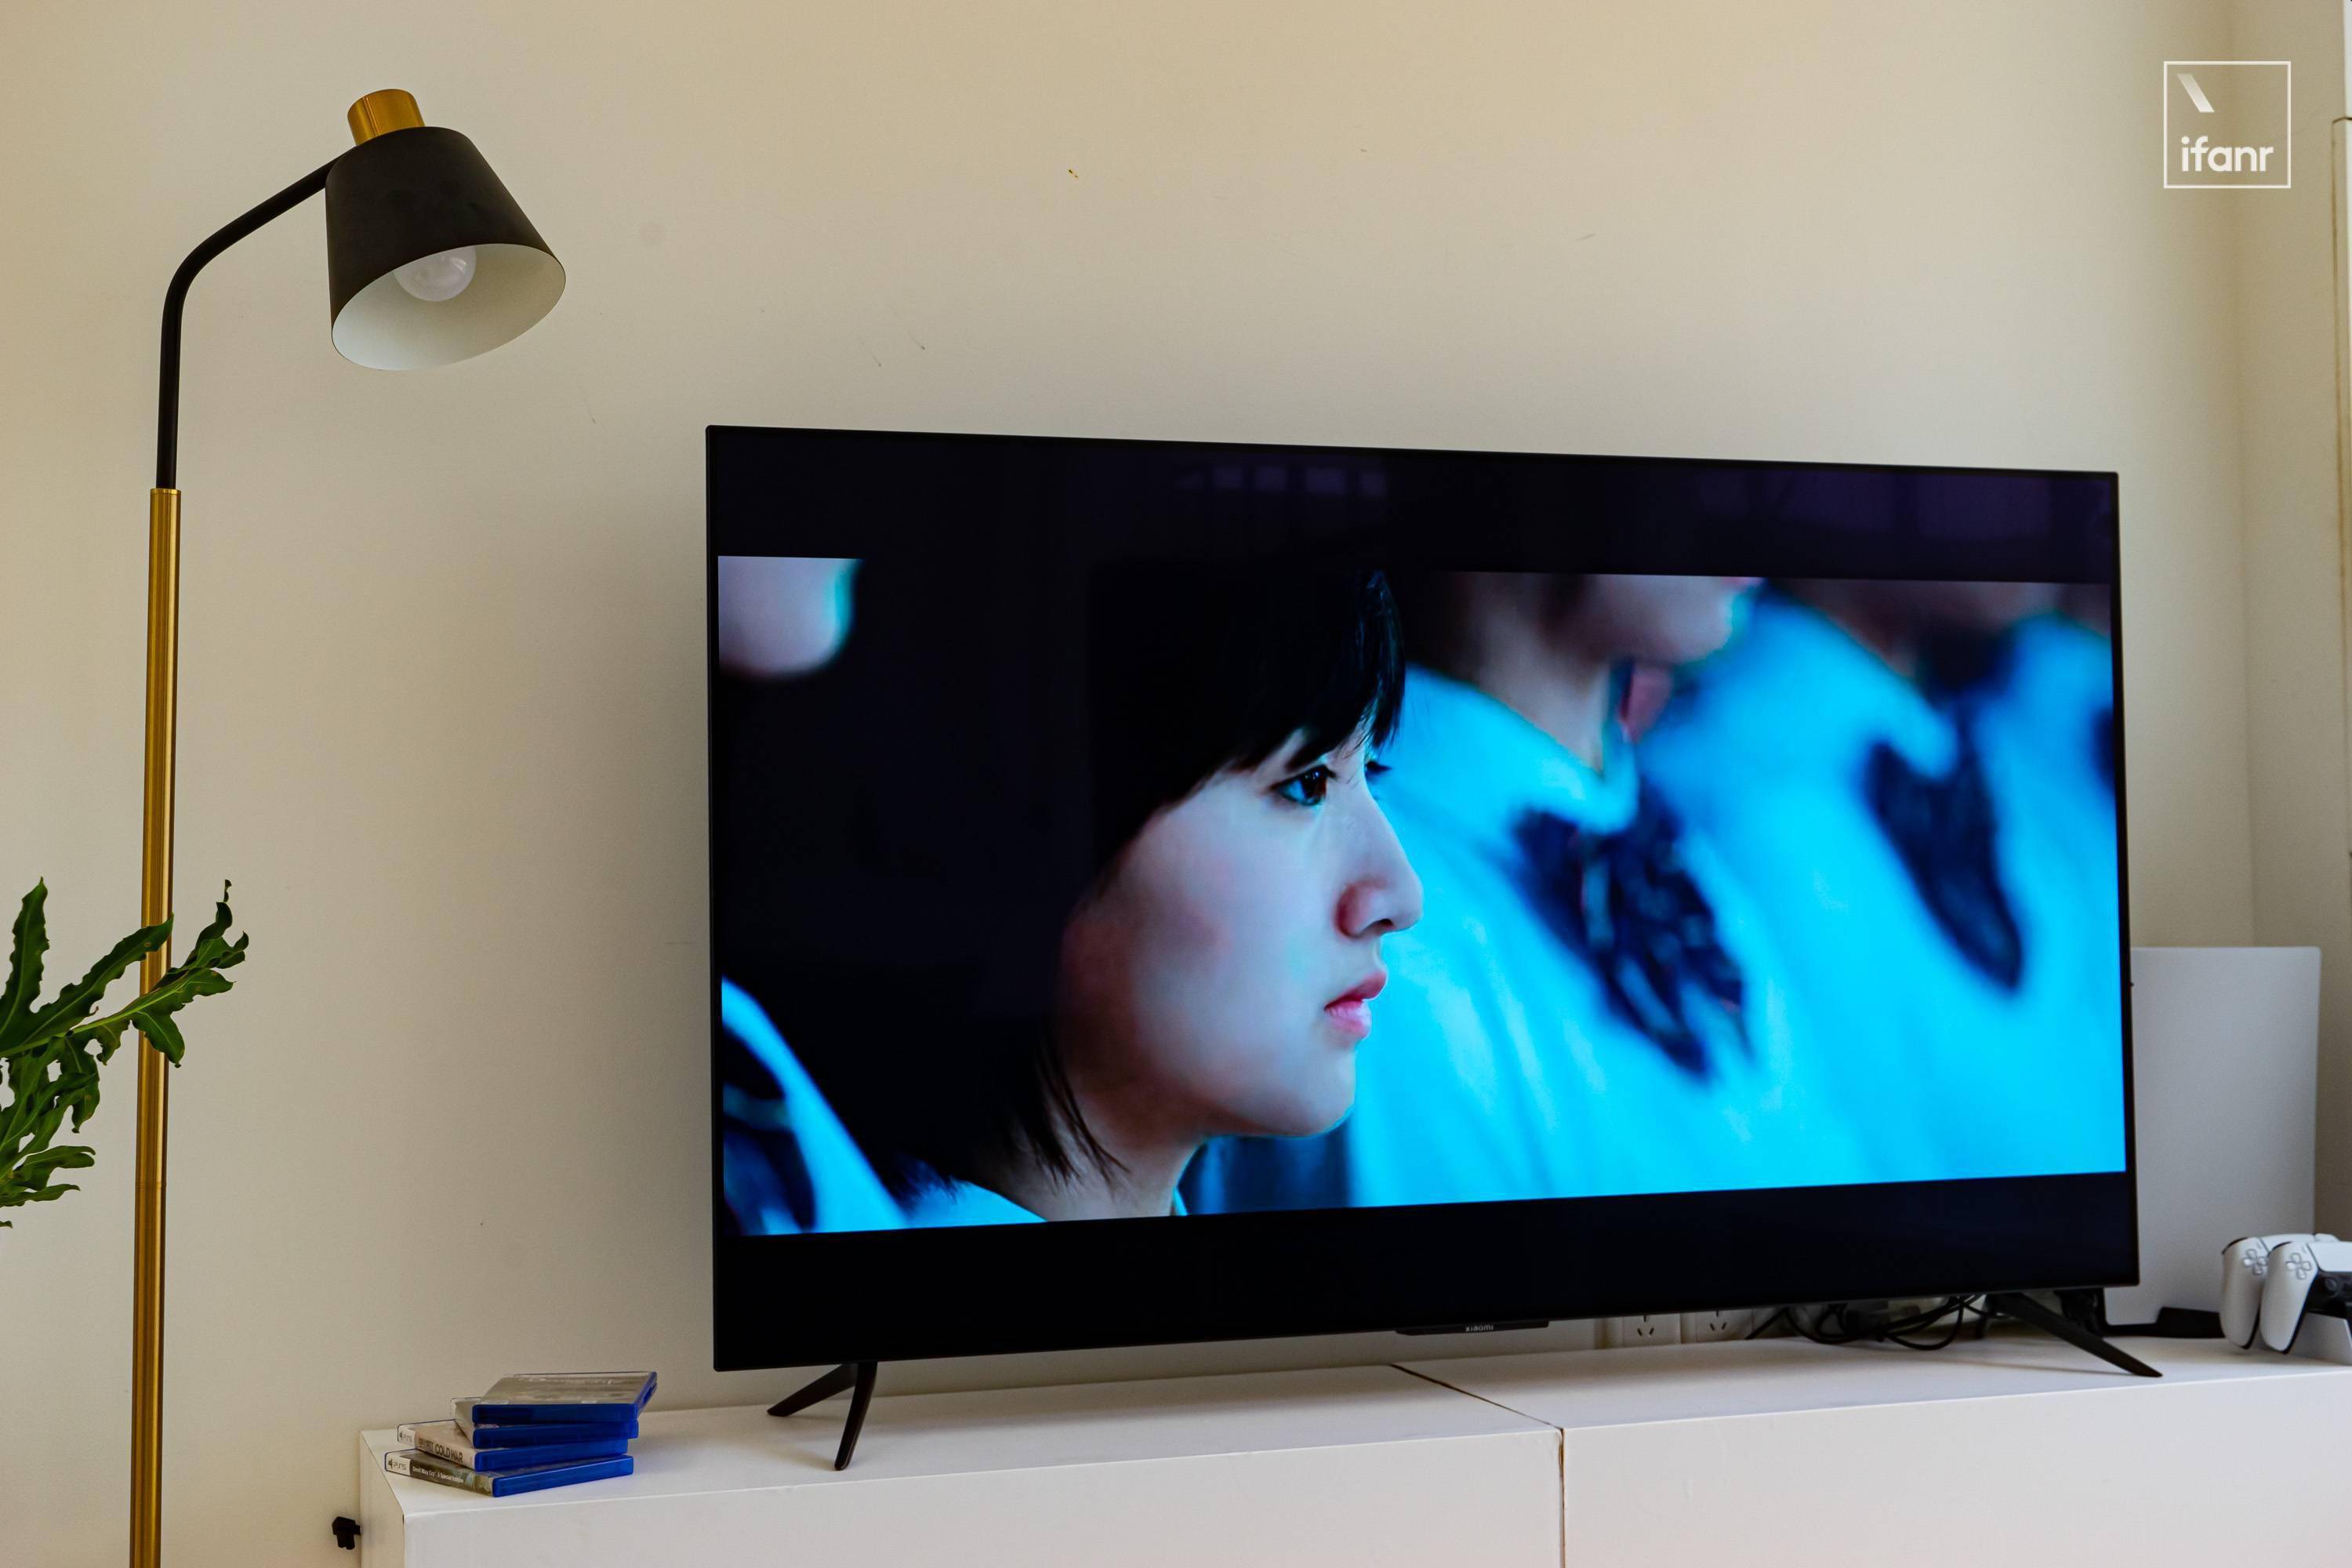 小米电视k歌视频教程 海信43e2f自带k歌功能